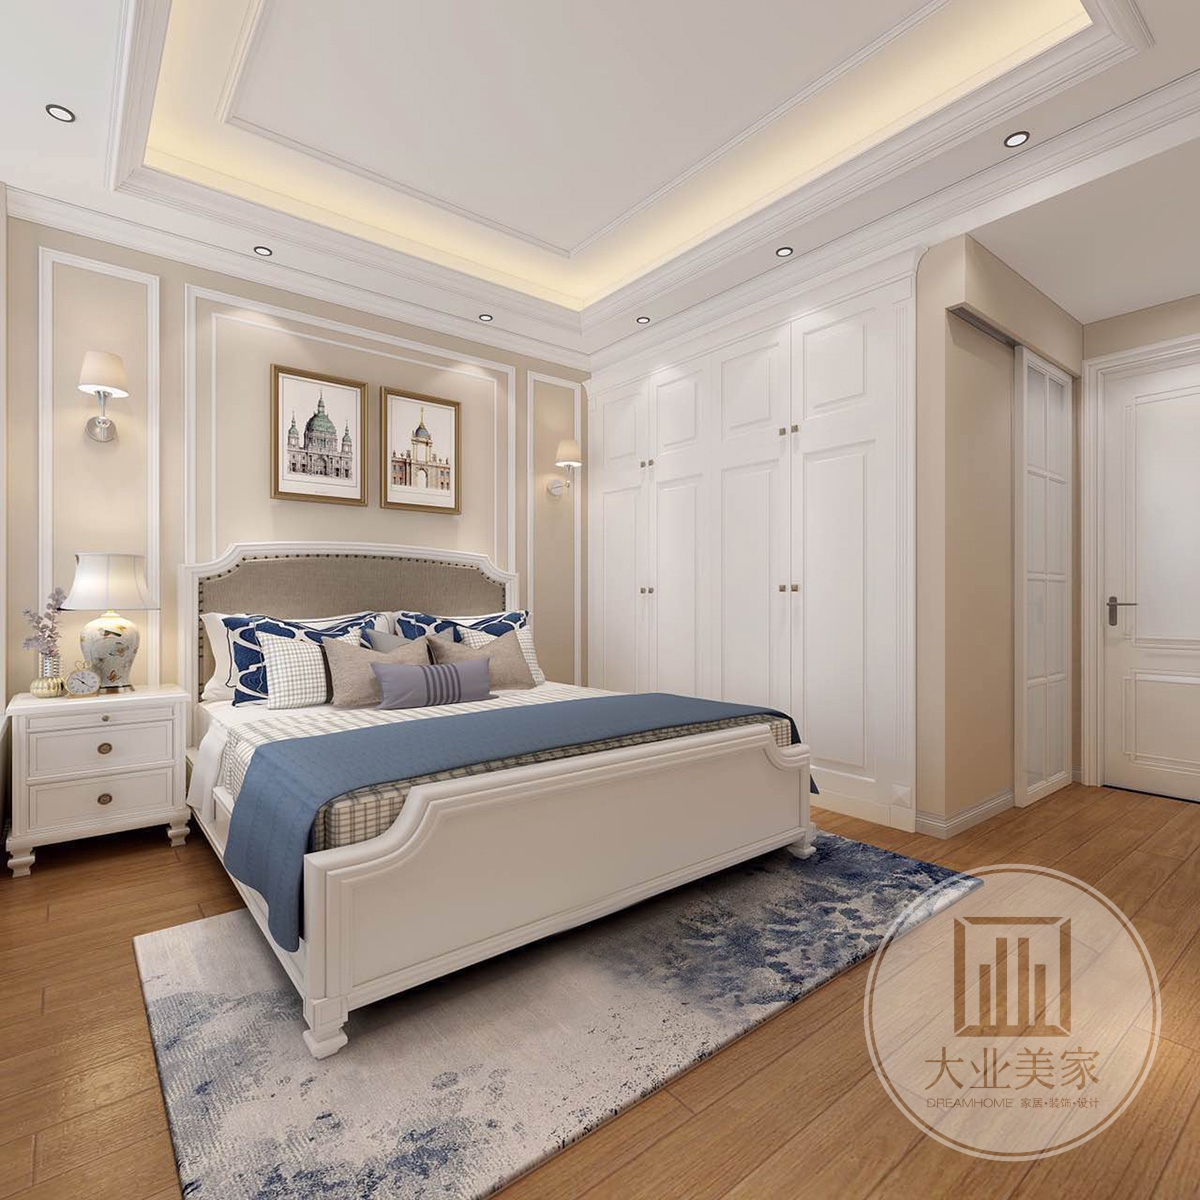 主卧效果图：卧室里富有质感的美式床品被蓝色填满，放眼望去是满眼的光滑柔和，让空间显的大方、典雅的气质。